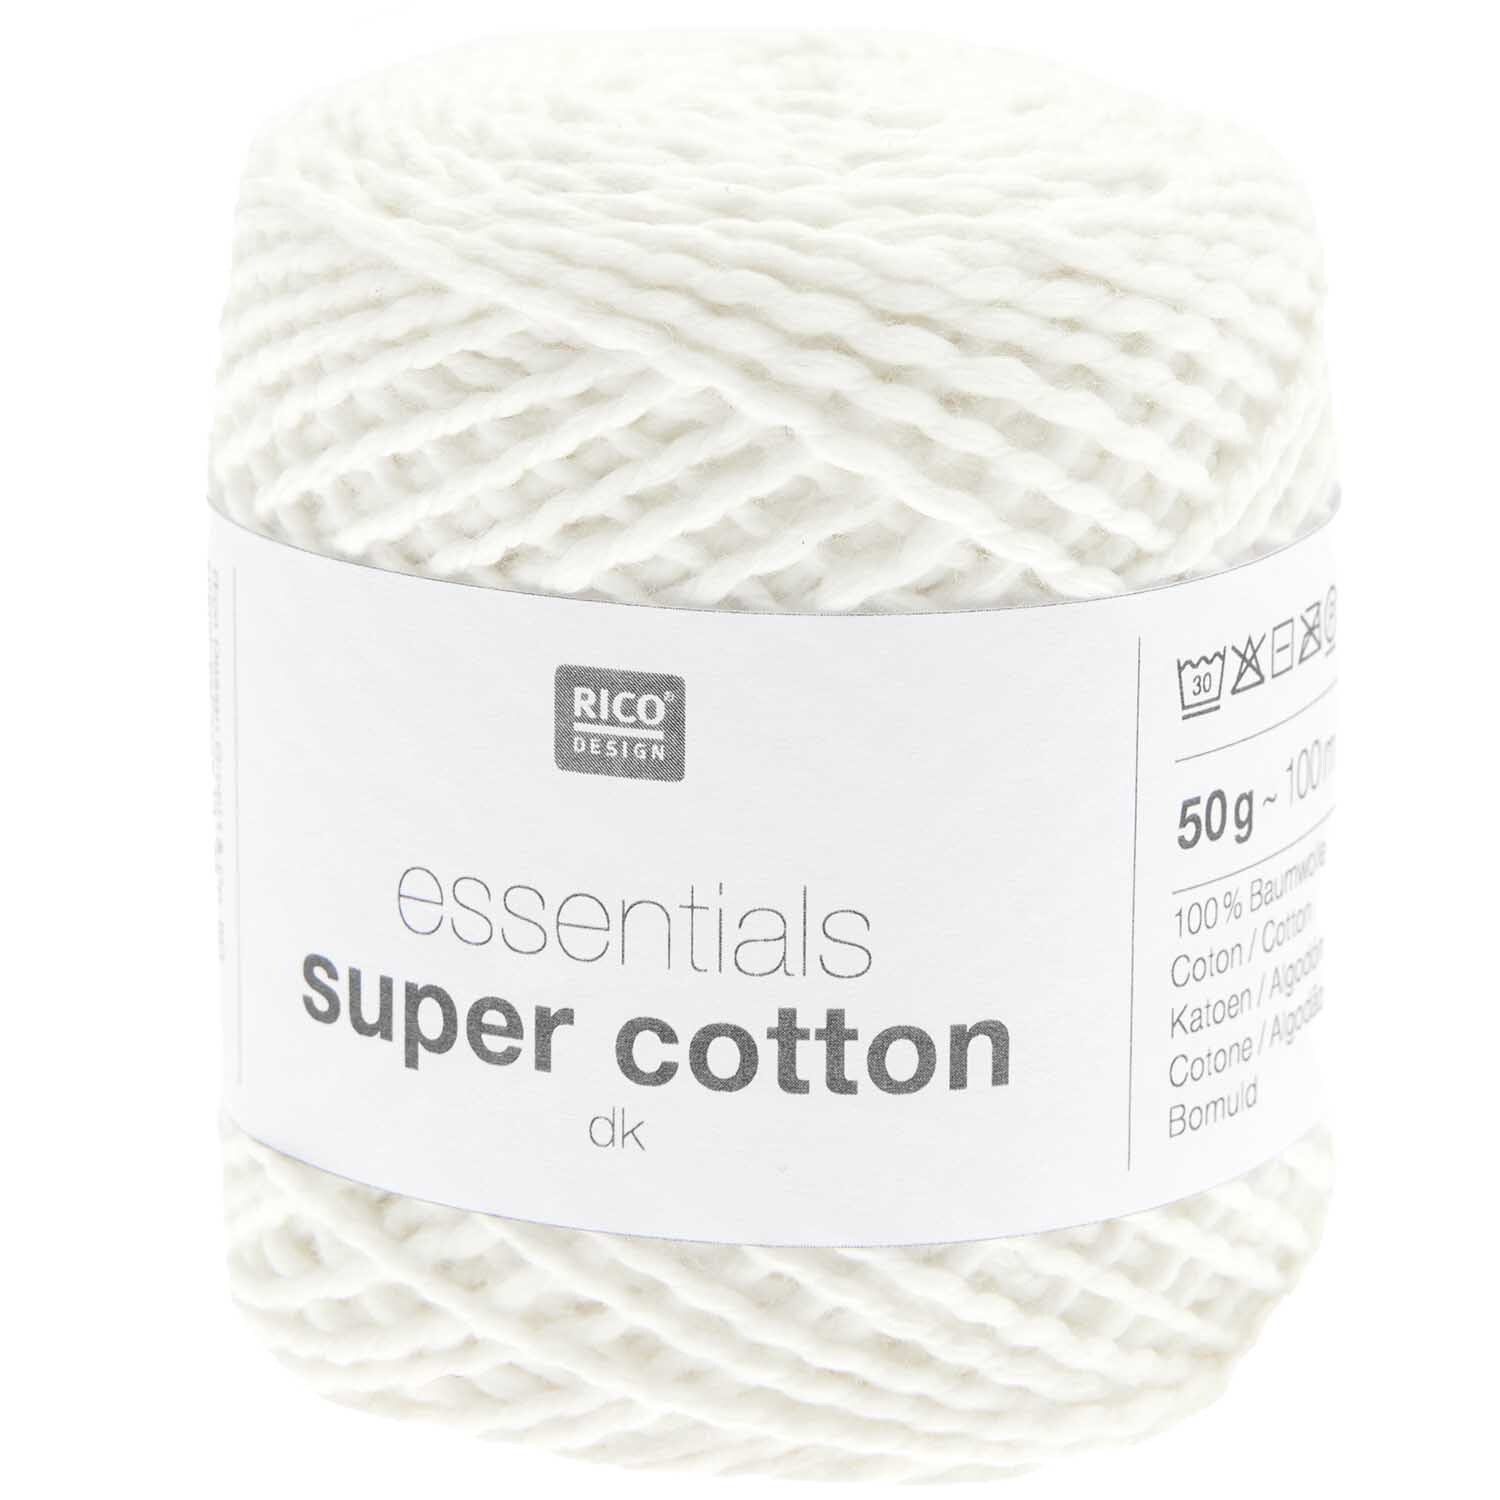 Essentials Super Cotton dk